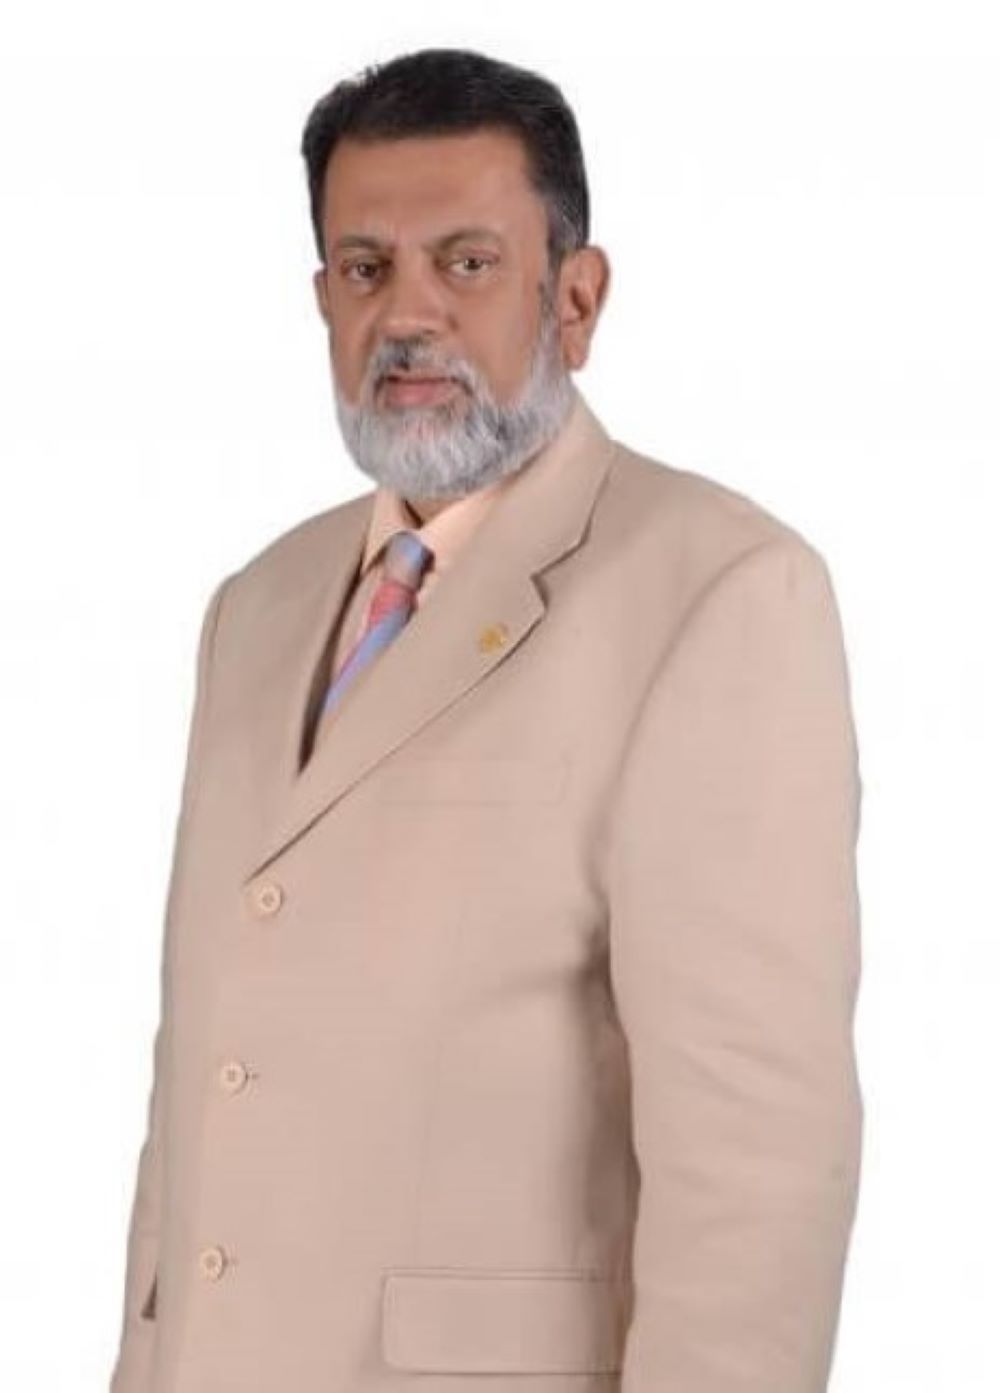 Mr. Shafiq Jiwani